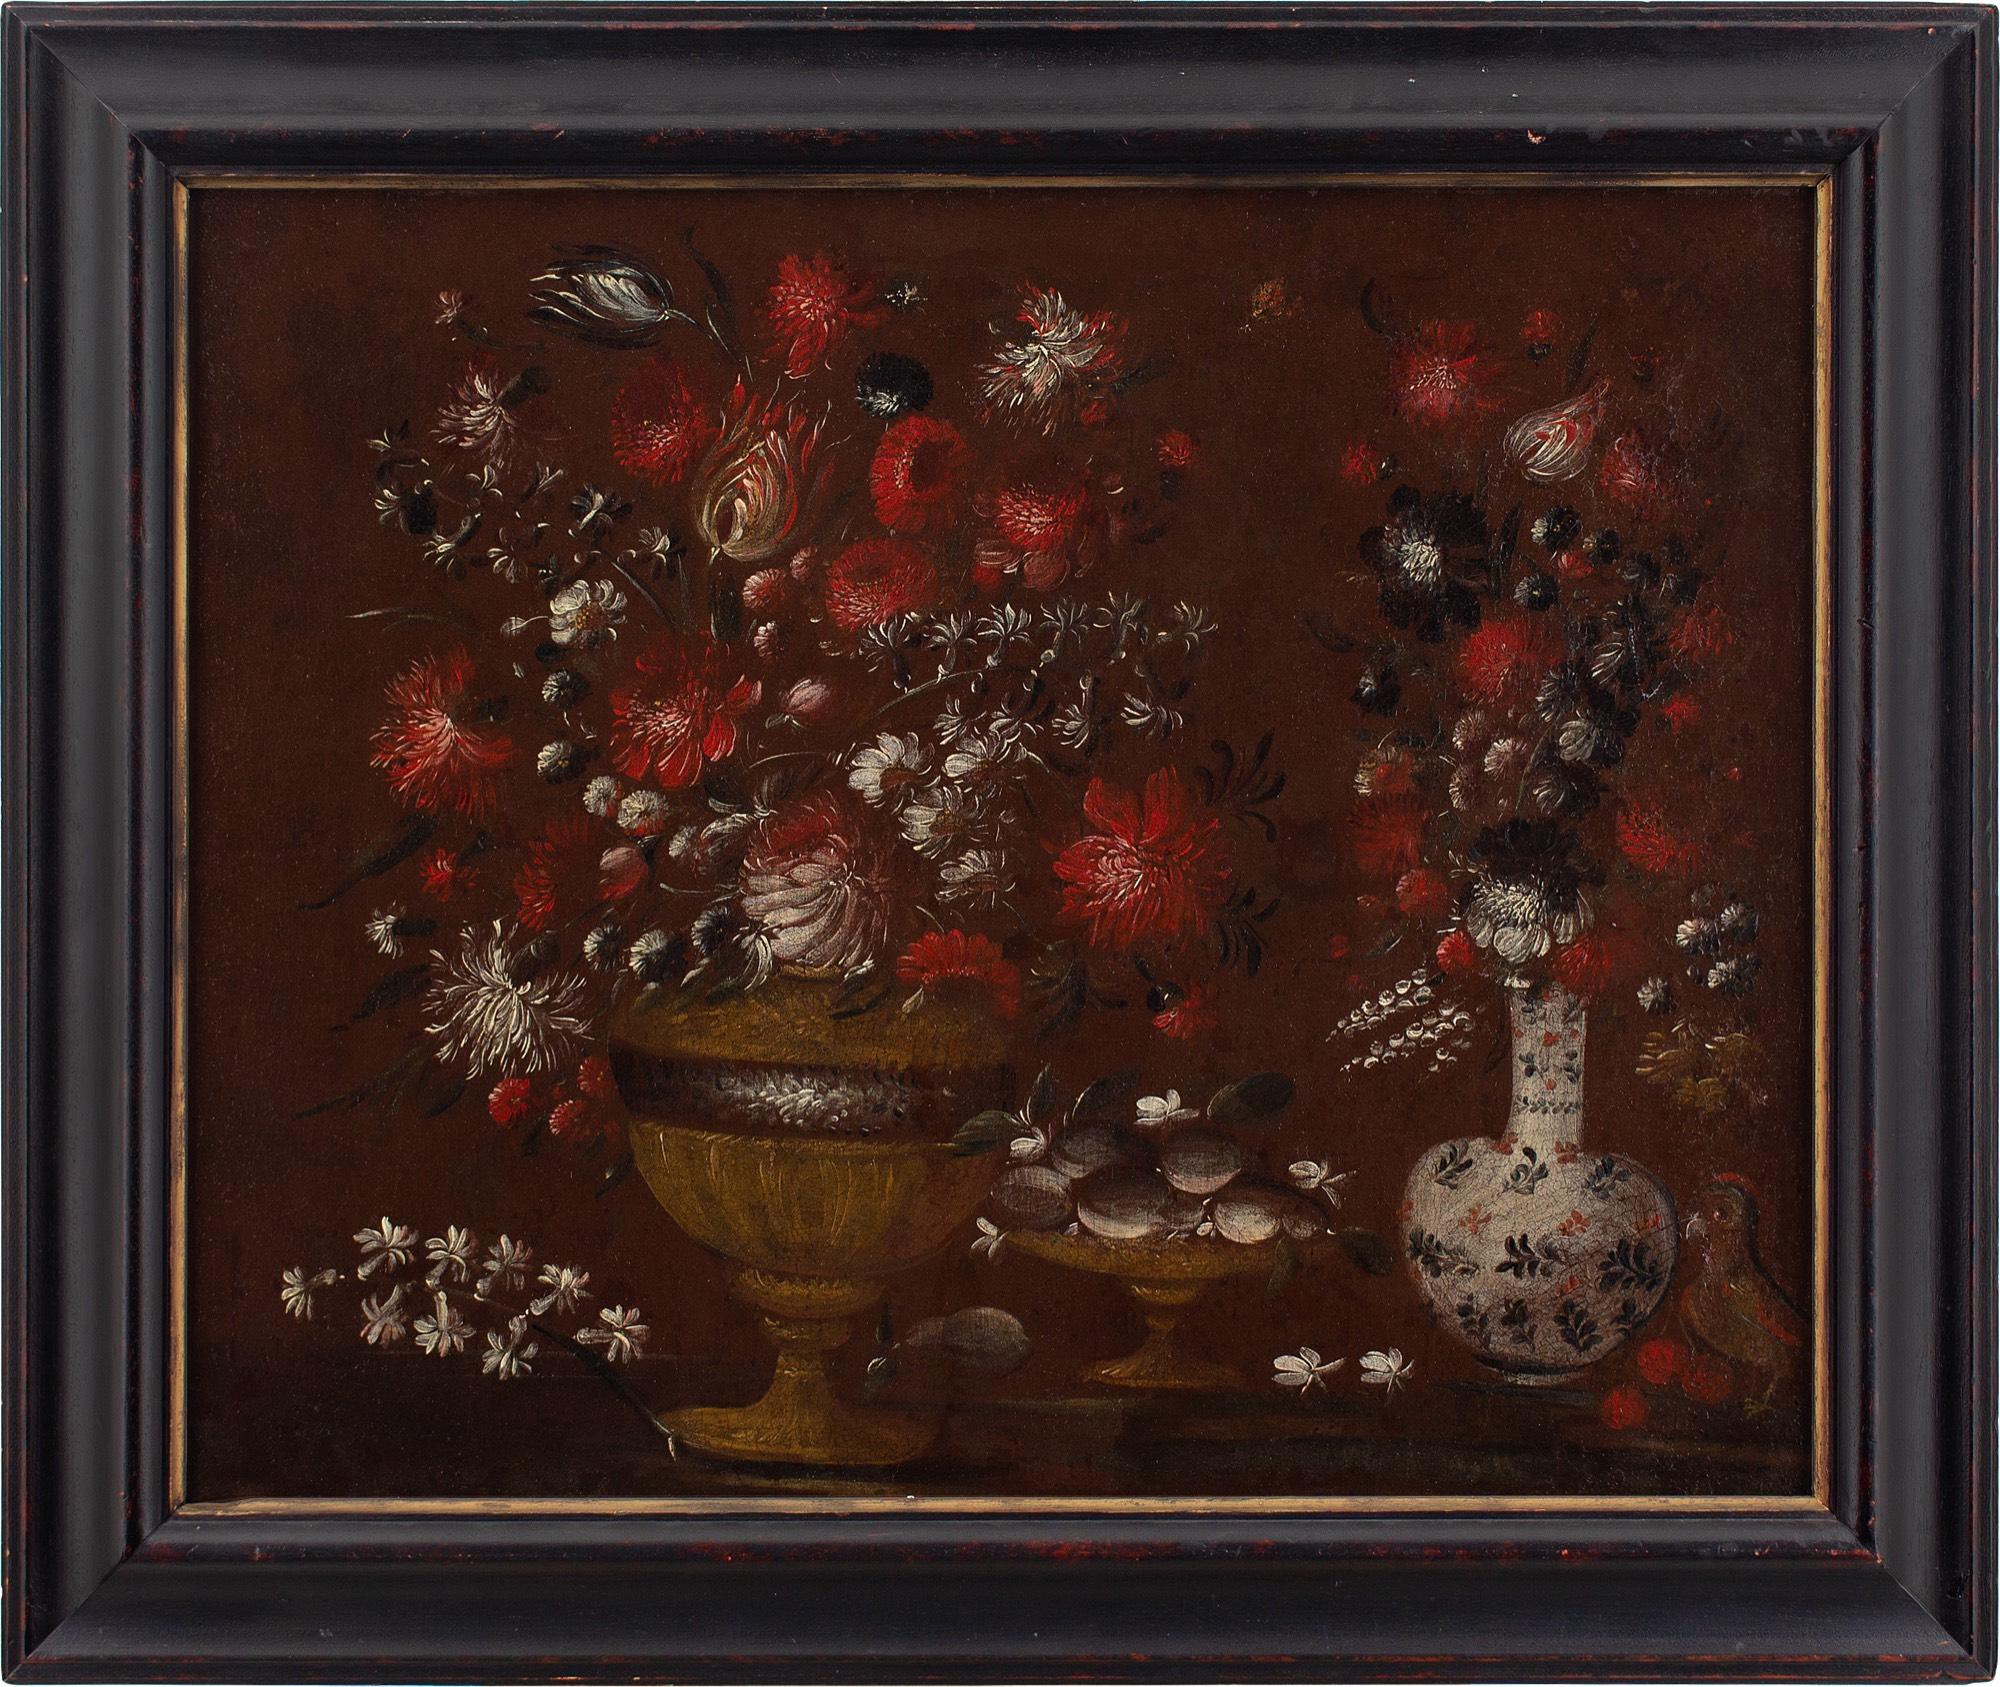 Nature morte avec fleurs, école italienne du 17e siècle, peinture à l'huile